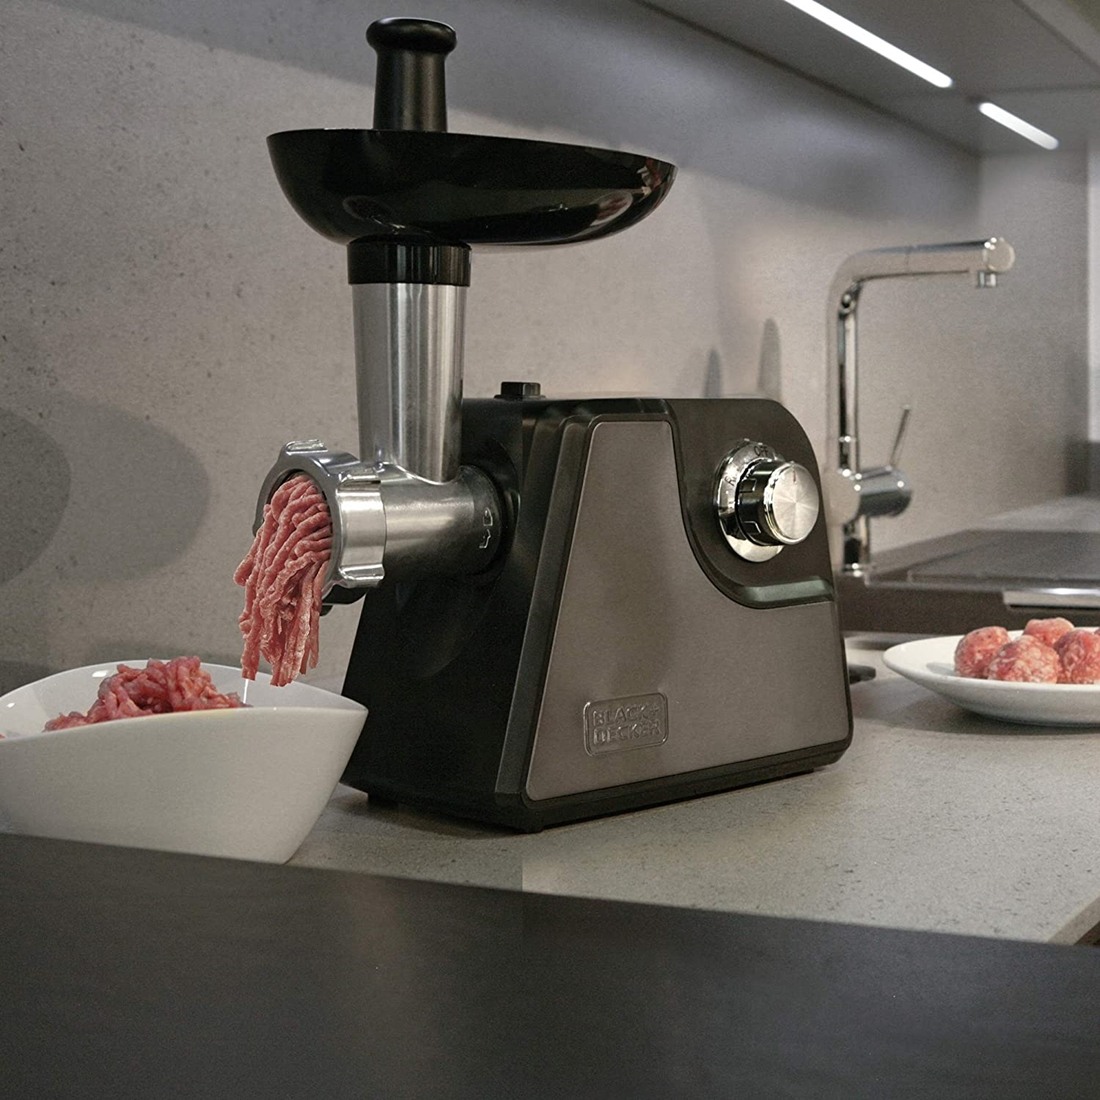 Masina de tocat carne 2 trepte viteza Black+Decker 1000 W Black + Decker Appliances imagine noua idaho.ro